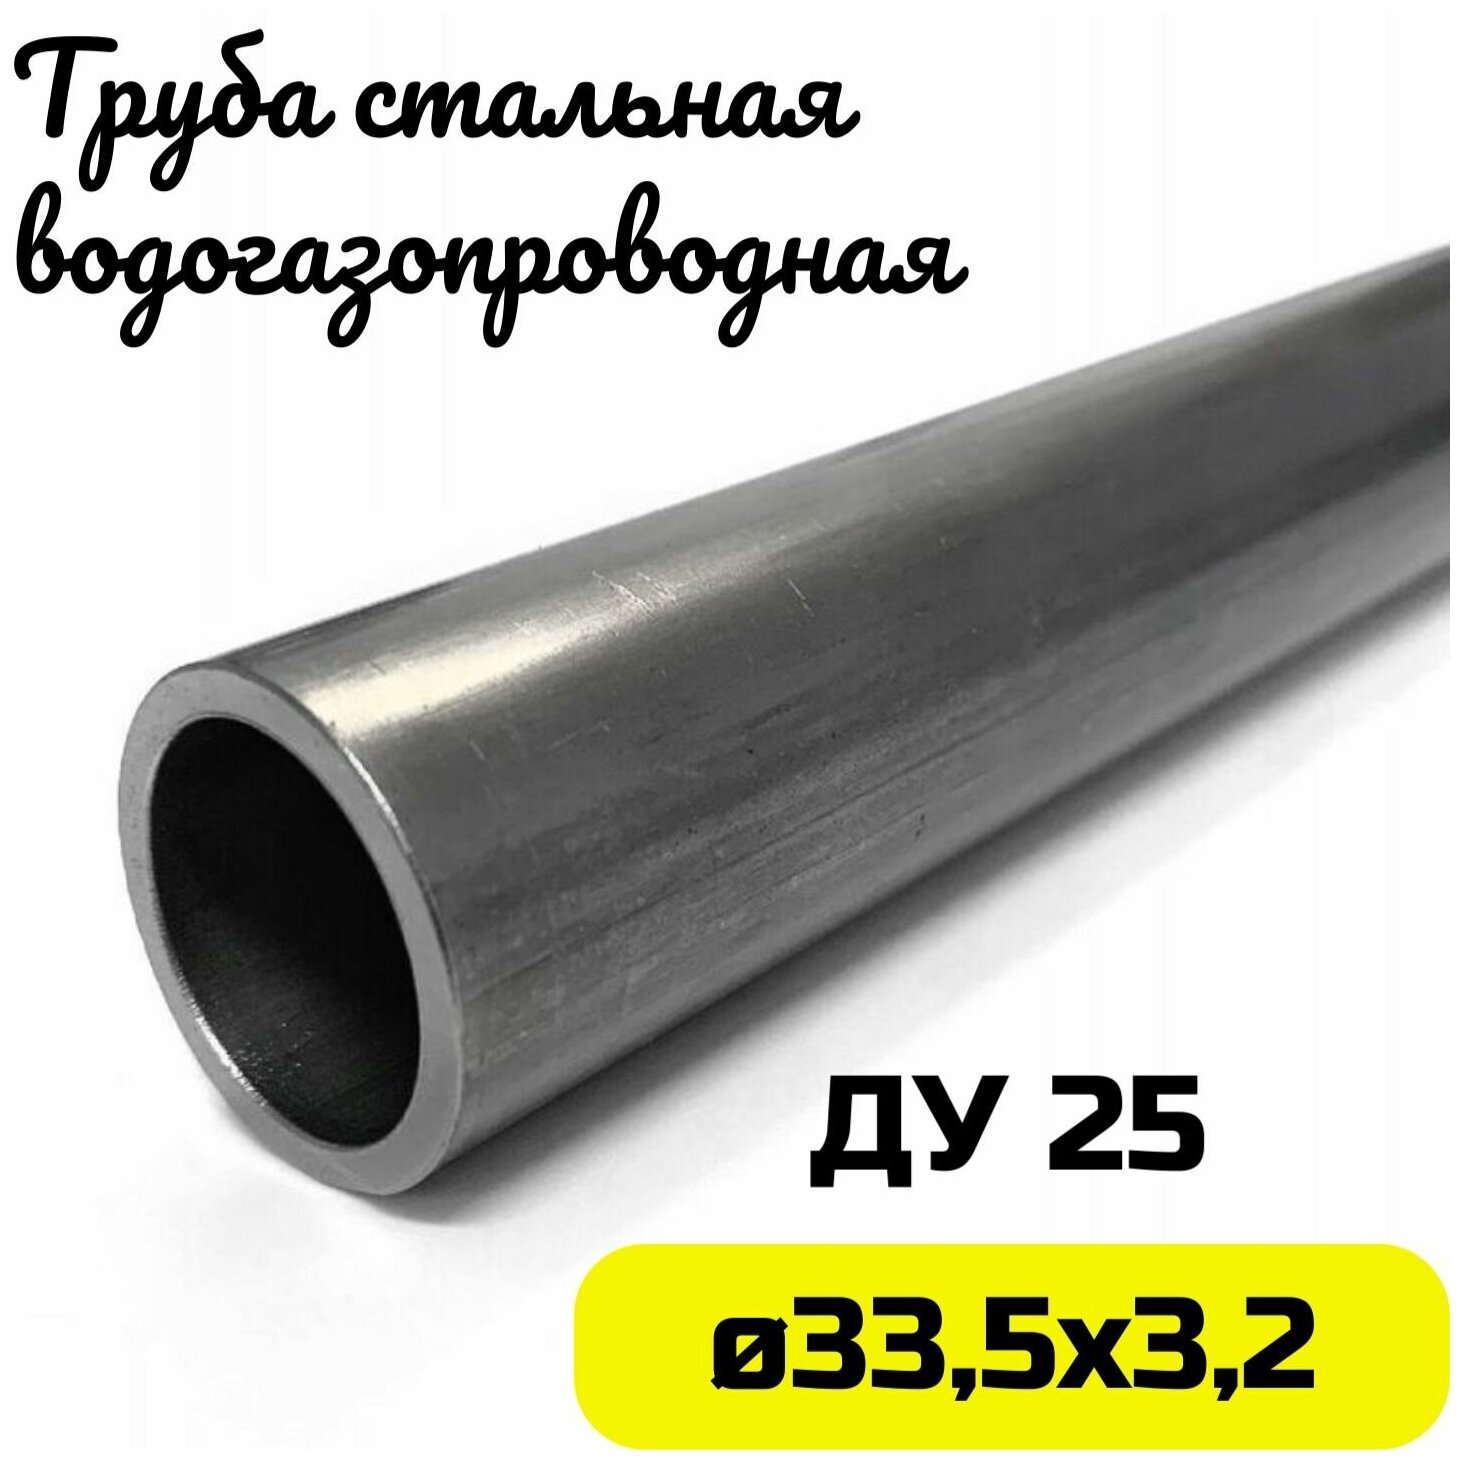 Труба металлическая 33х32мм круглая стальная ДУ25